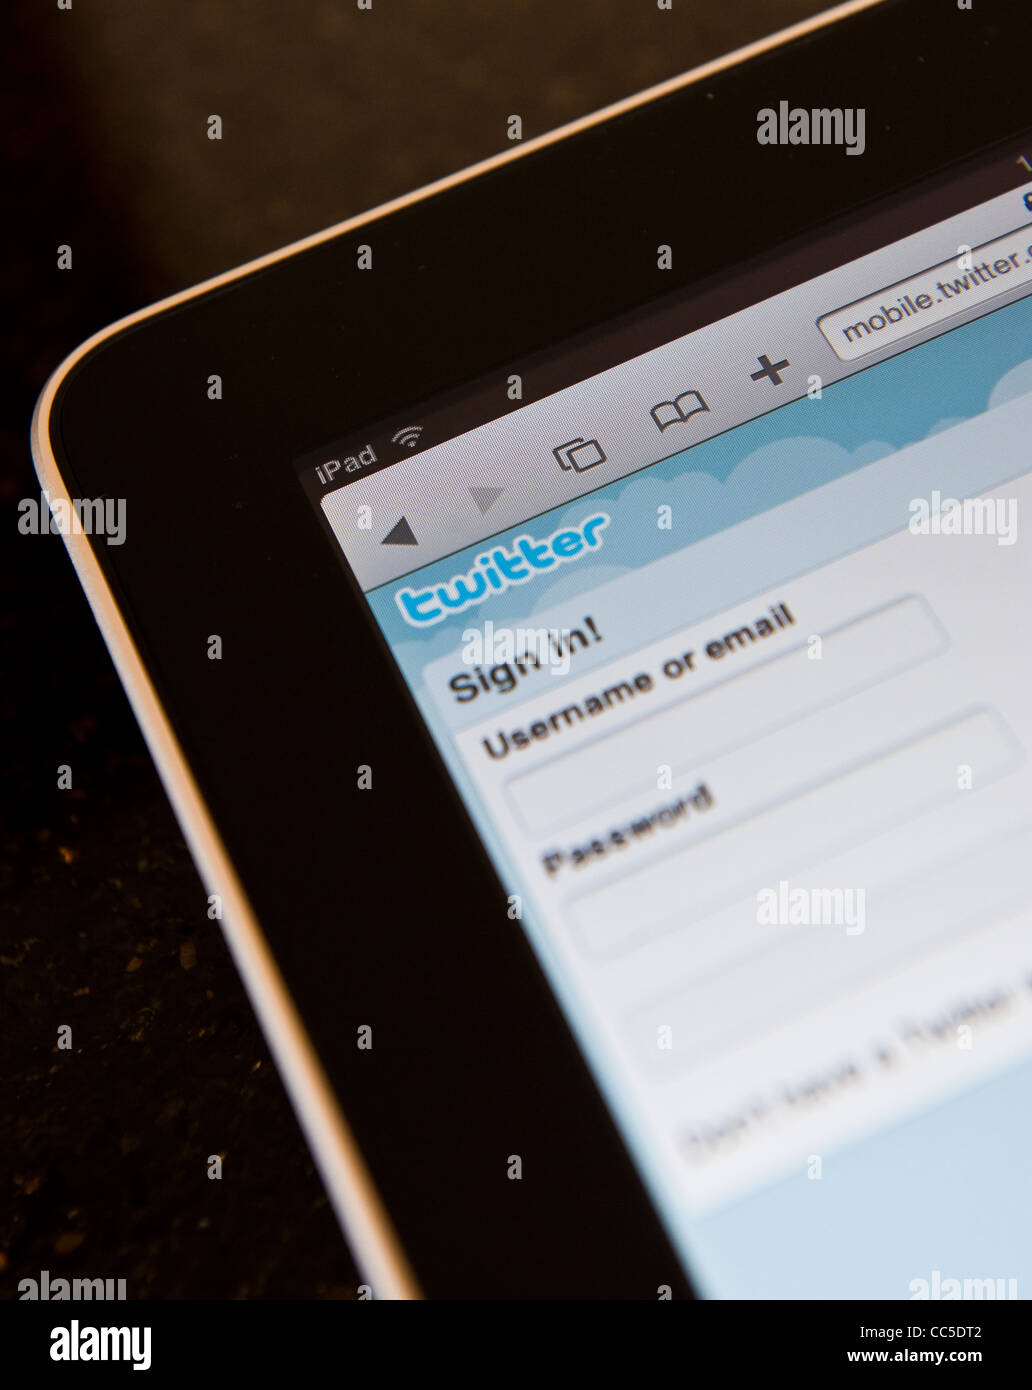 Nahaufnahme von Apple iPad verwendet für mobile Twitter-Konto-Login und Nutzung Stockfoto